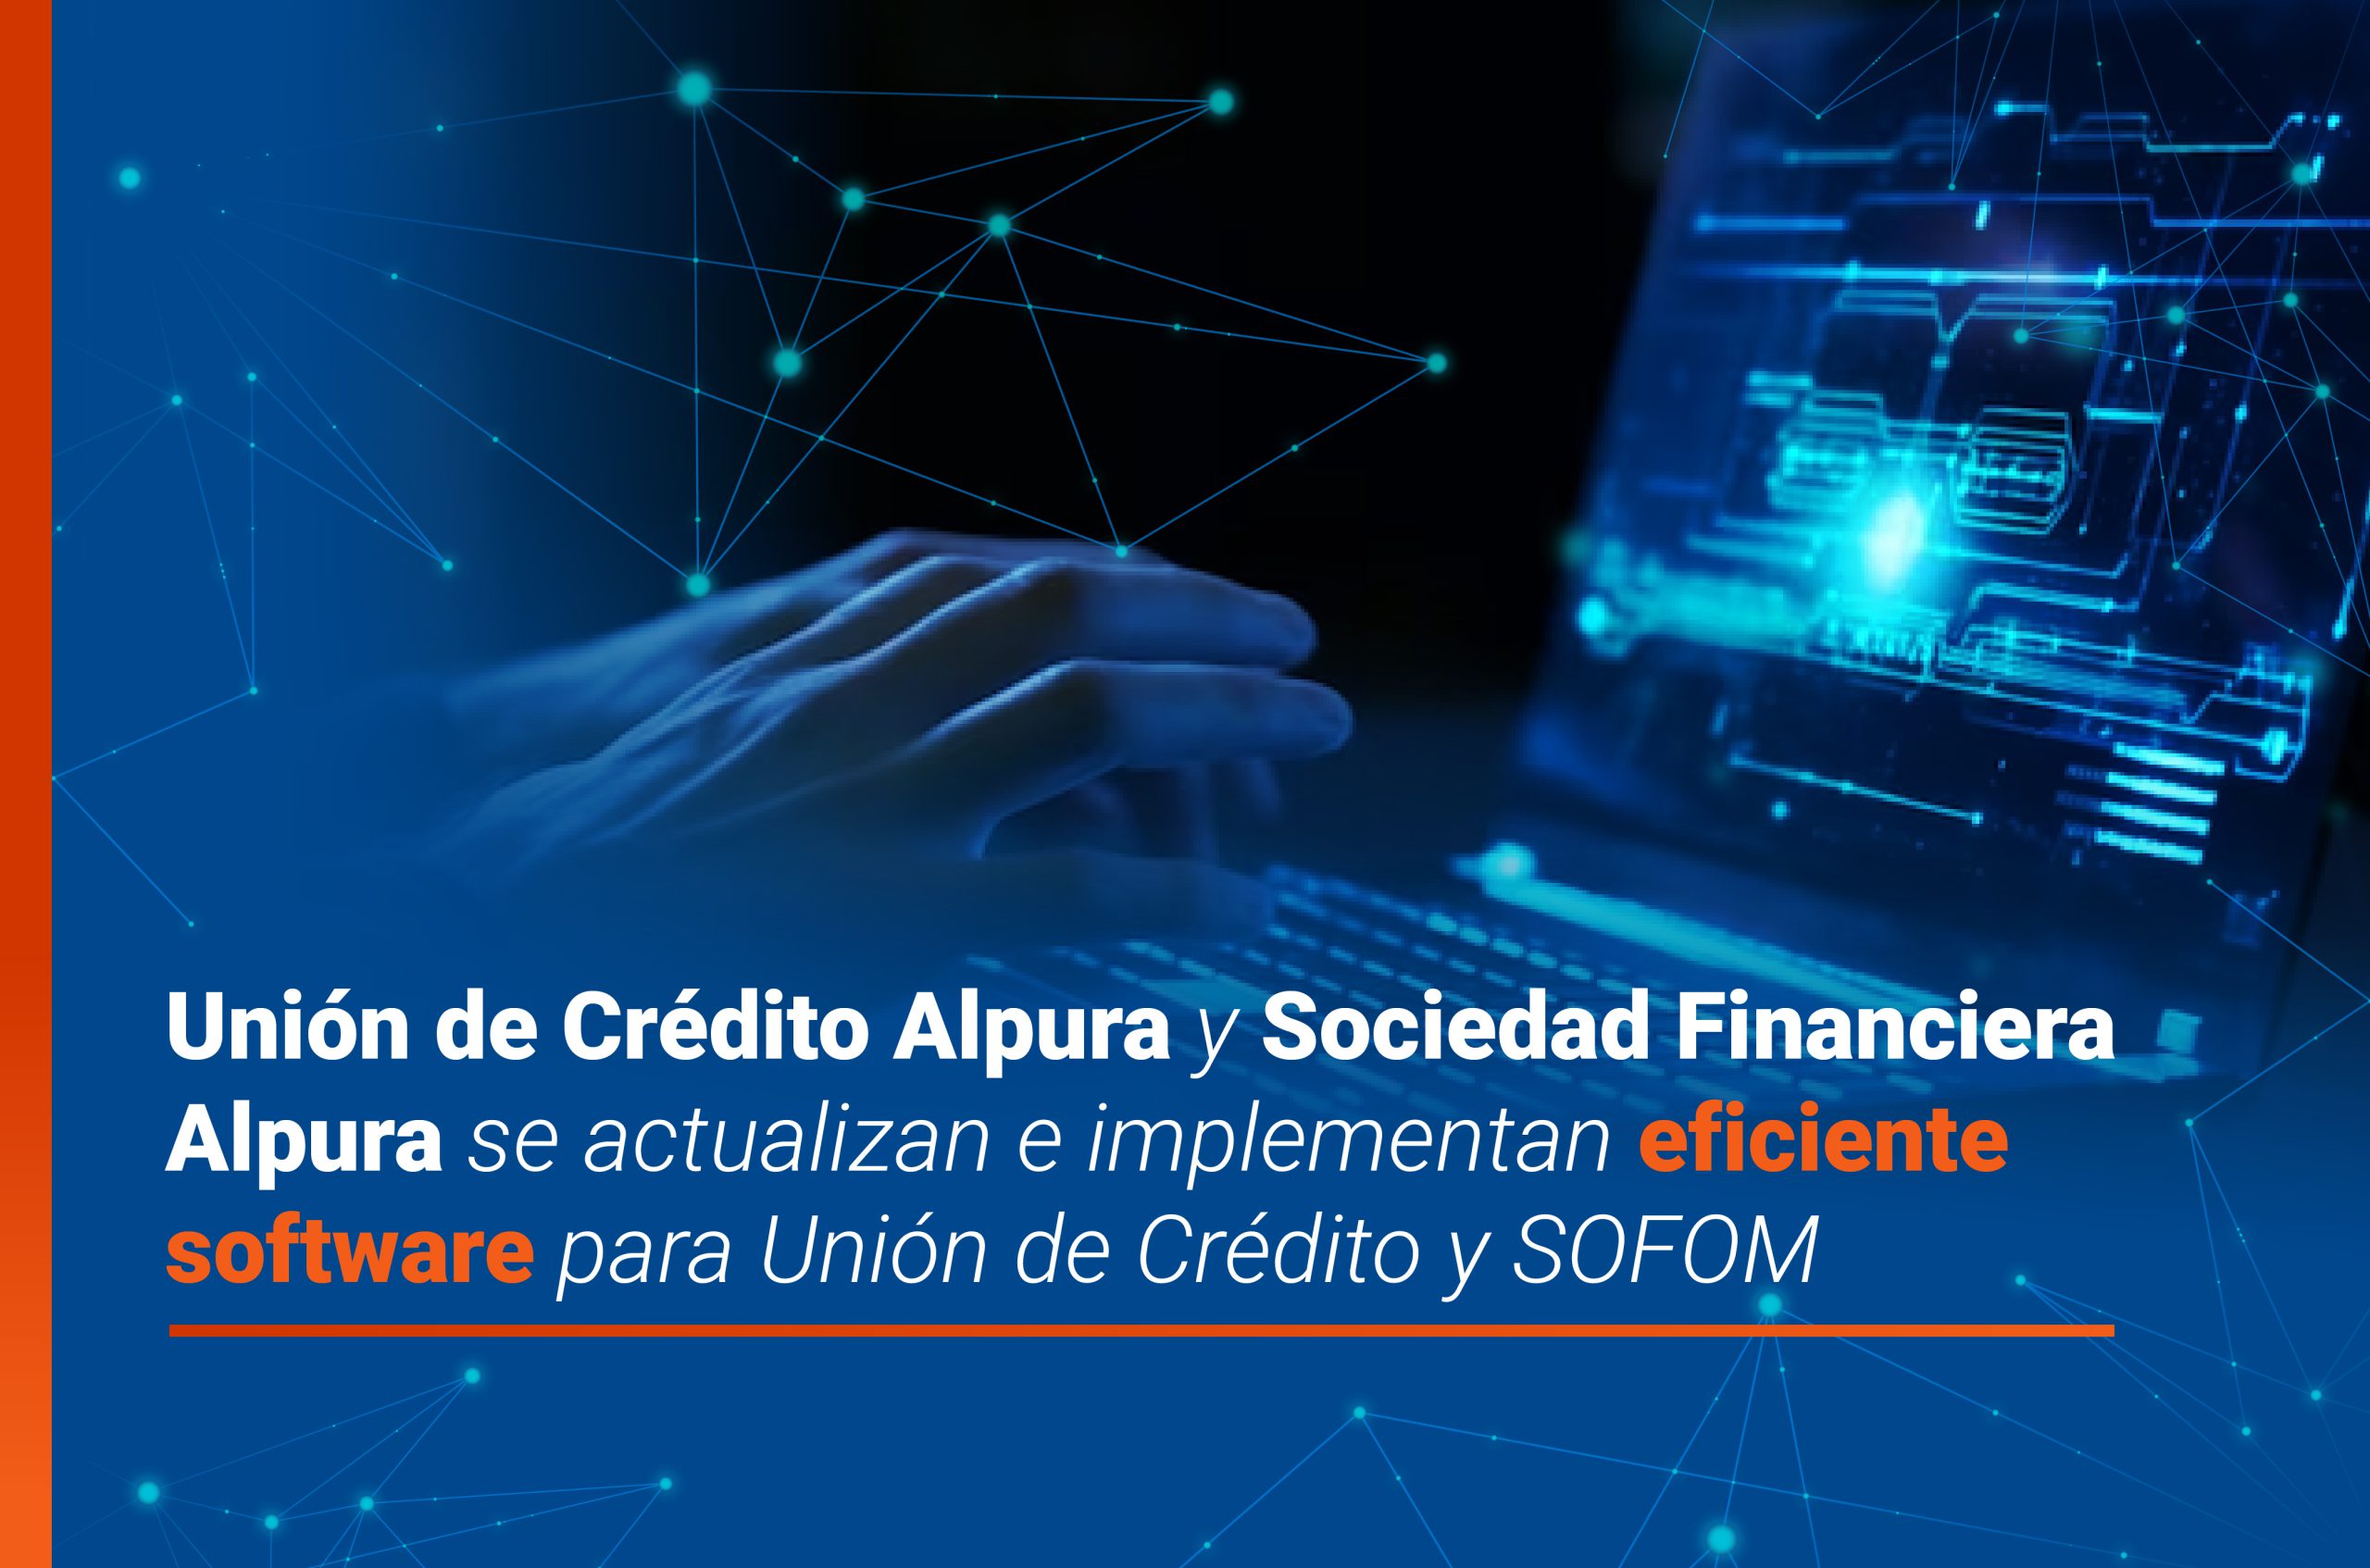 Unión de Crédito Alpura y Sociedad Financiera Alpura se actualizan e implementan eficiente software para Unión de Crédito y SOFOM